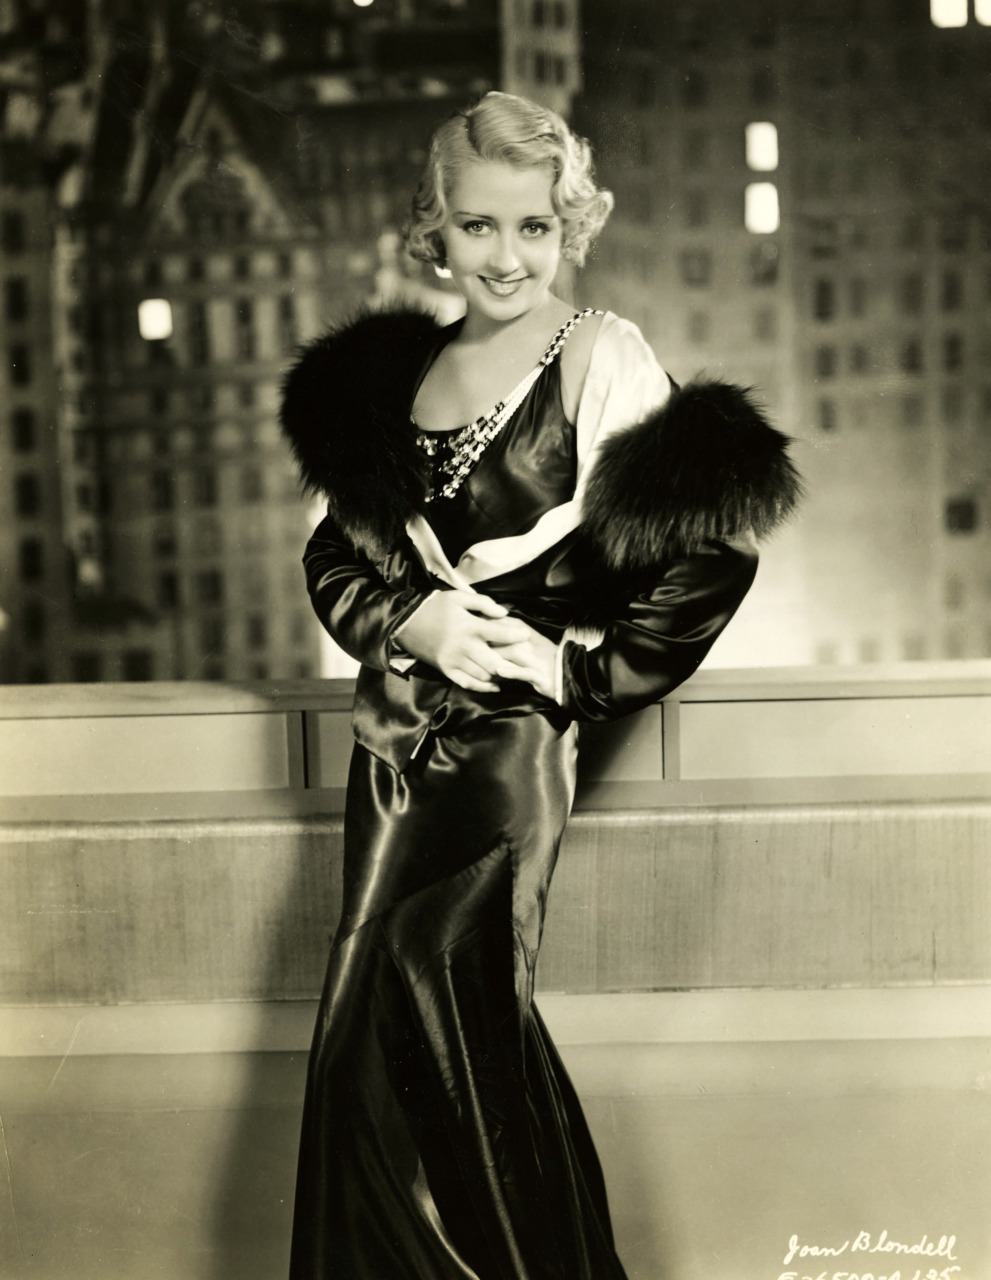 gentlemanlosergentlemanjunkie:
“Joan Blondell in an undated Paramount publicity still.
”